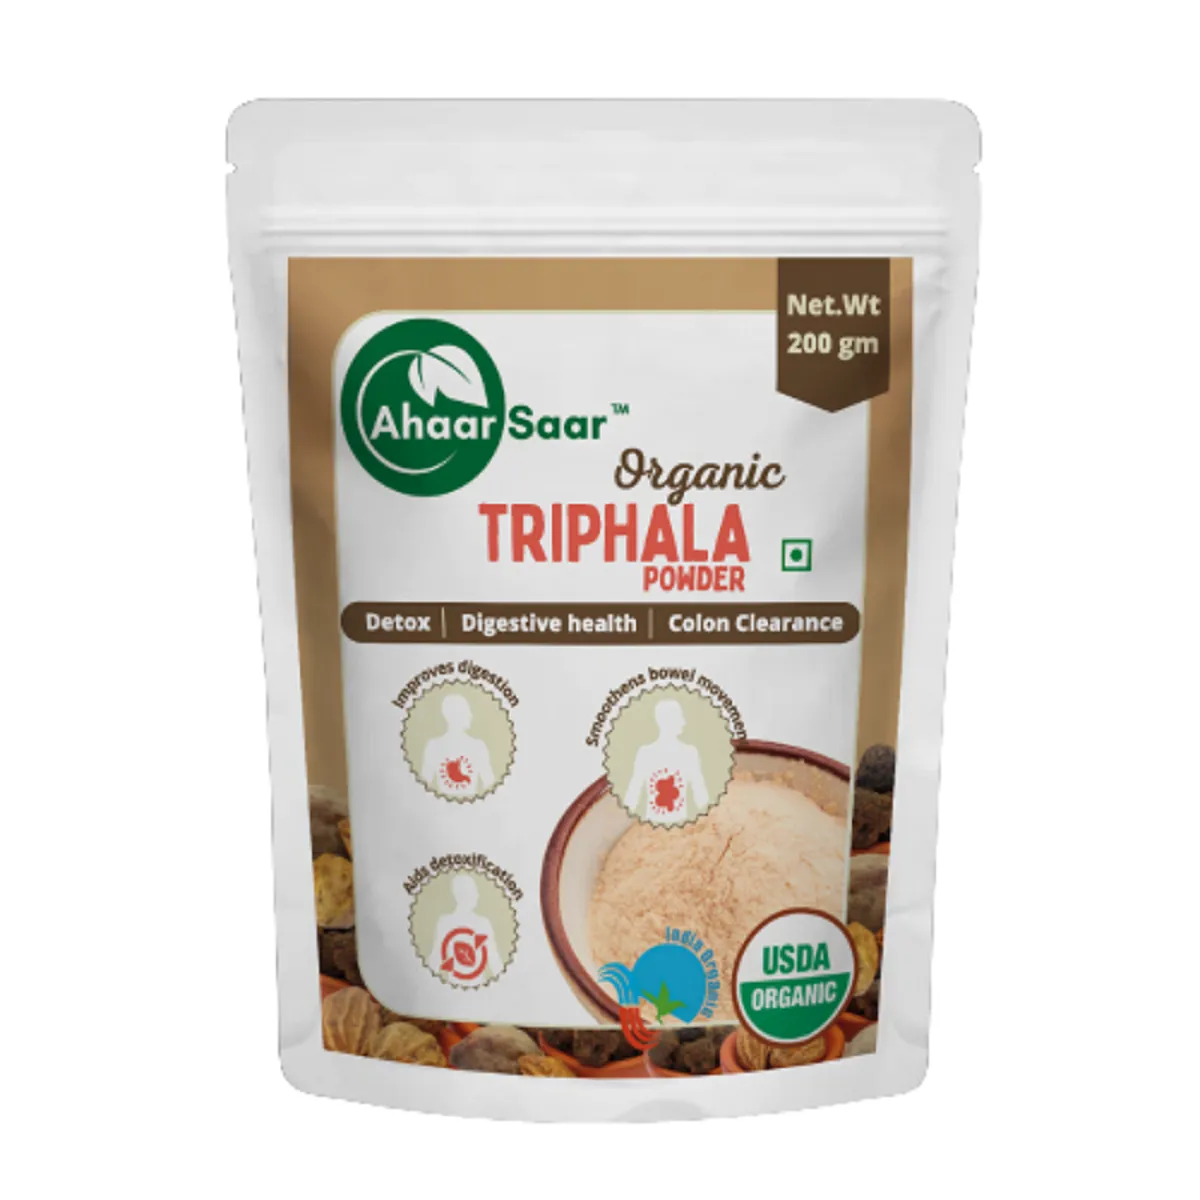 Ahaar Saar Organic Triphala Powder 200g